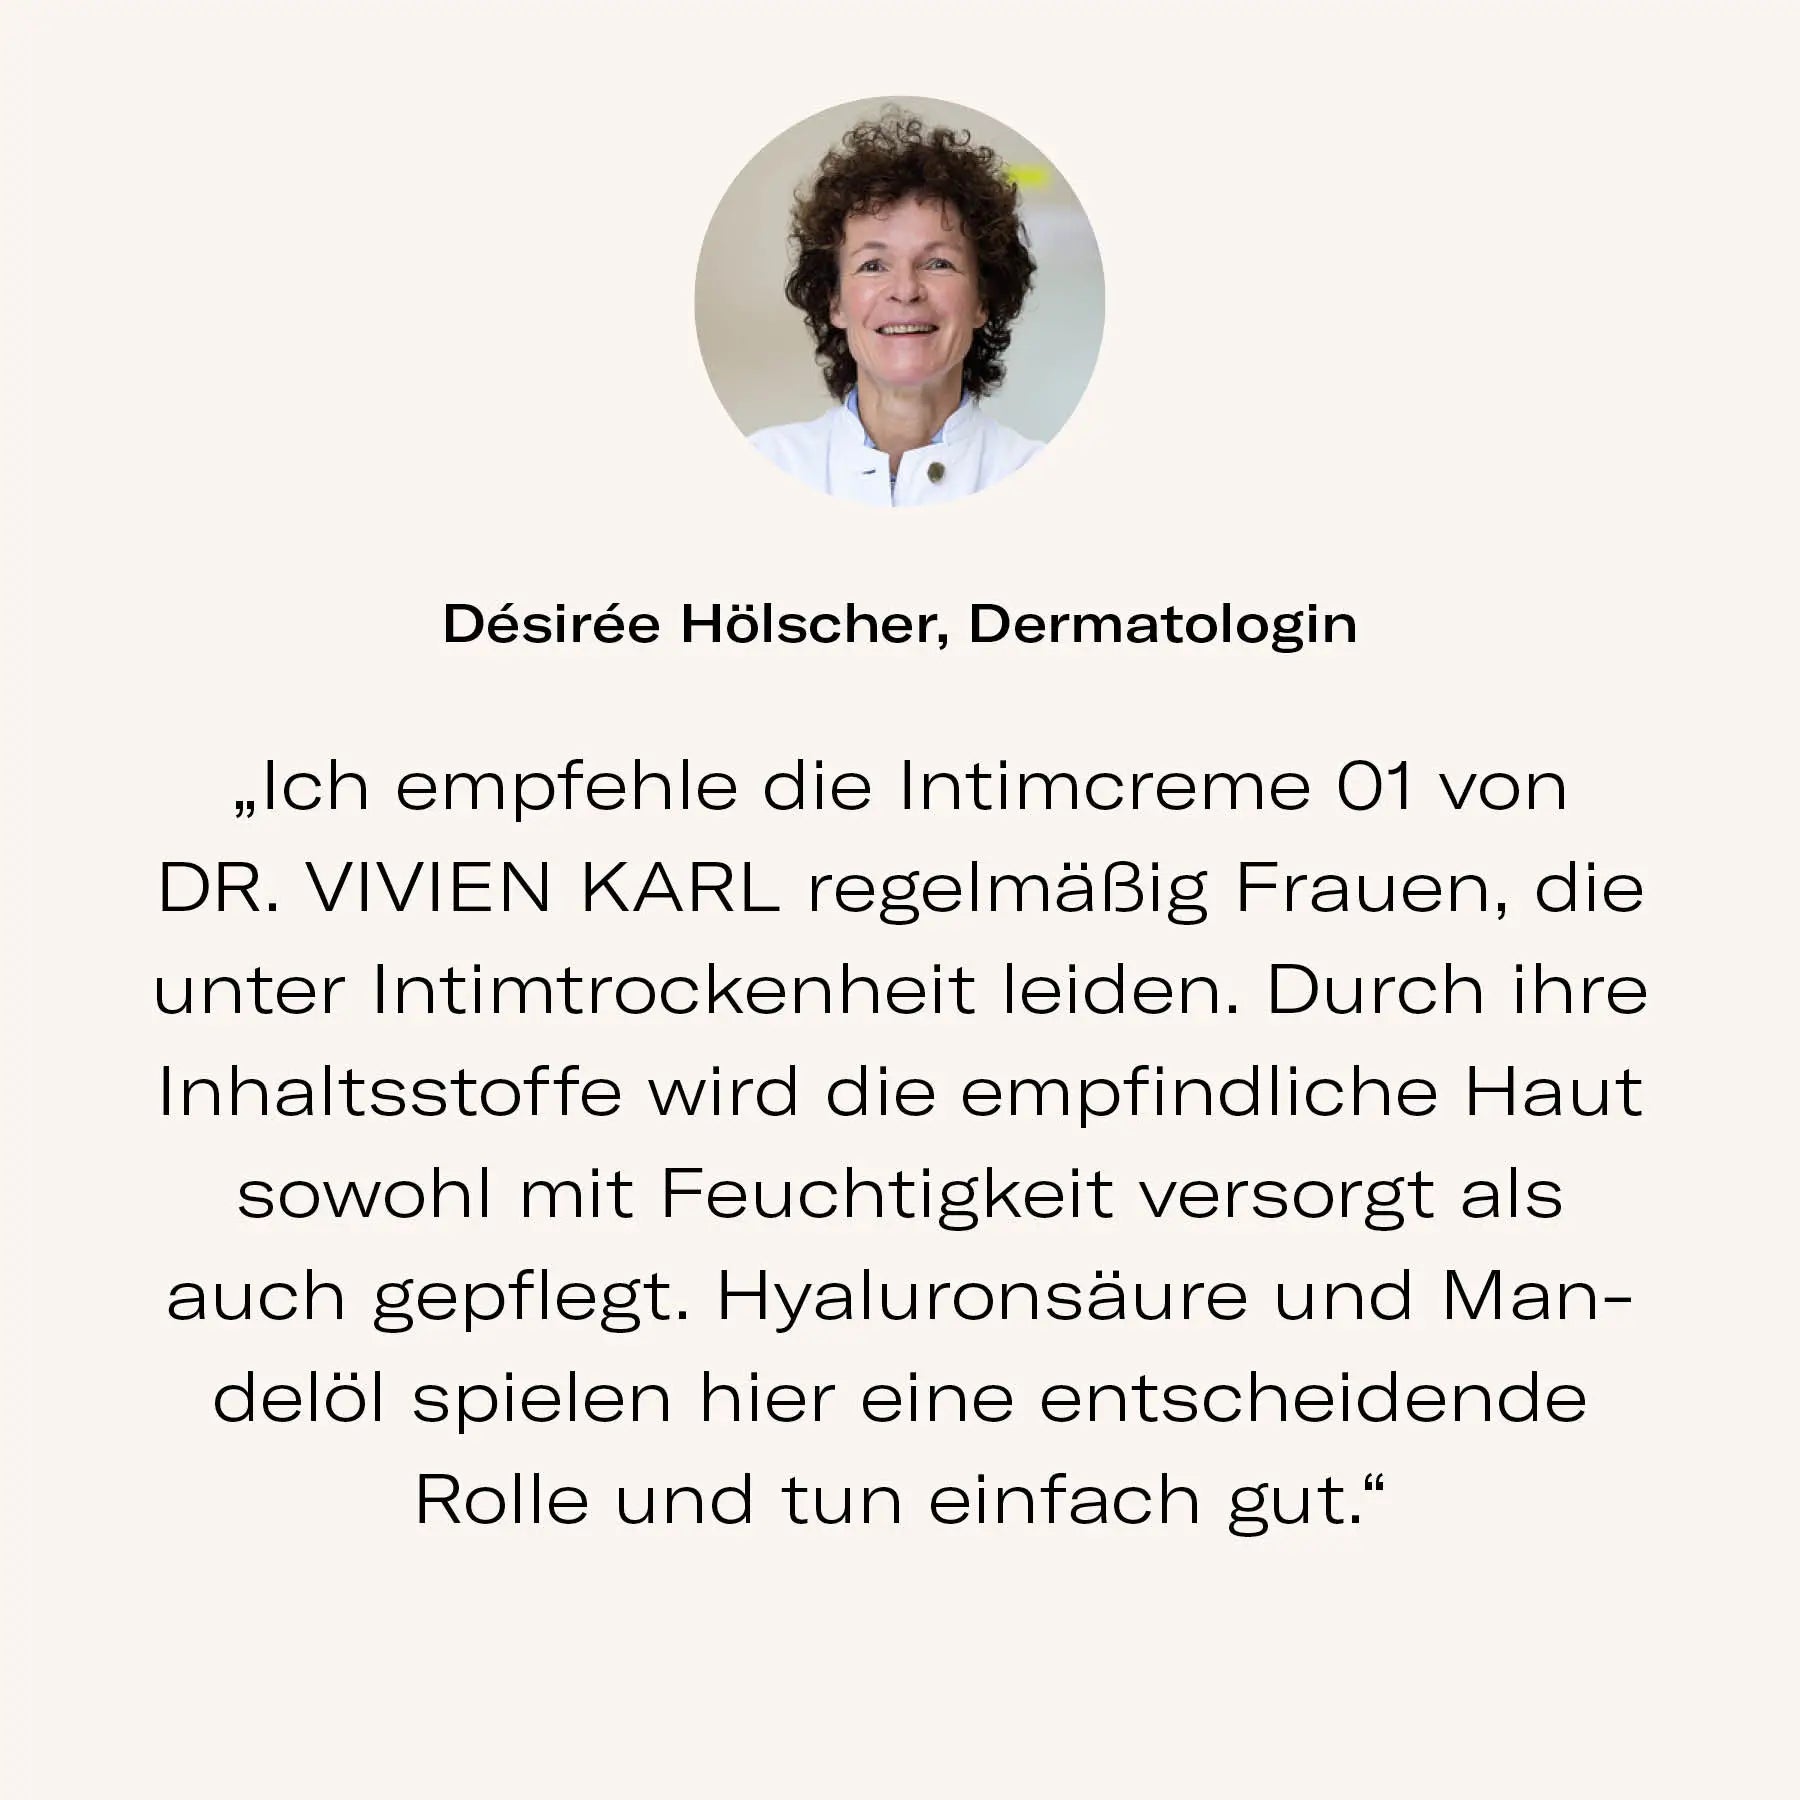 Empfehlung_Intimcreme_DR_VIVIEN_KARL